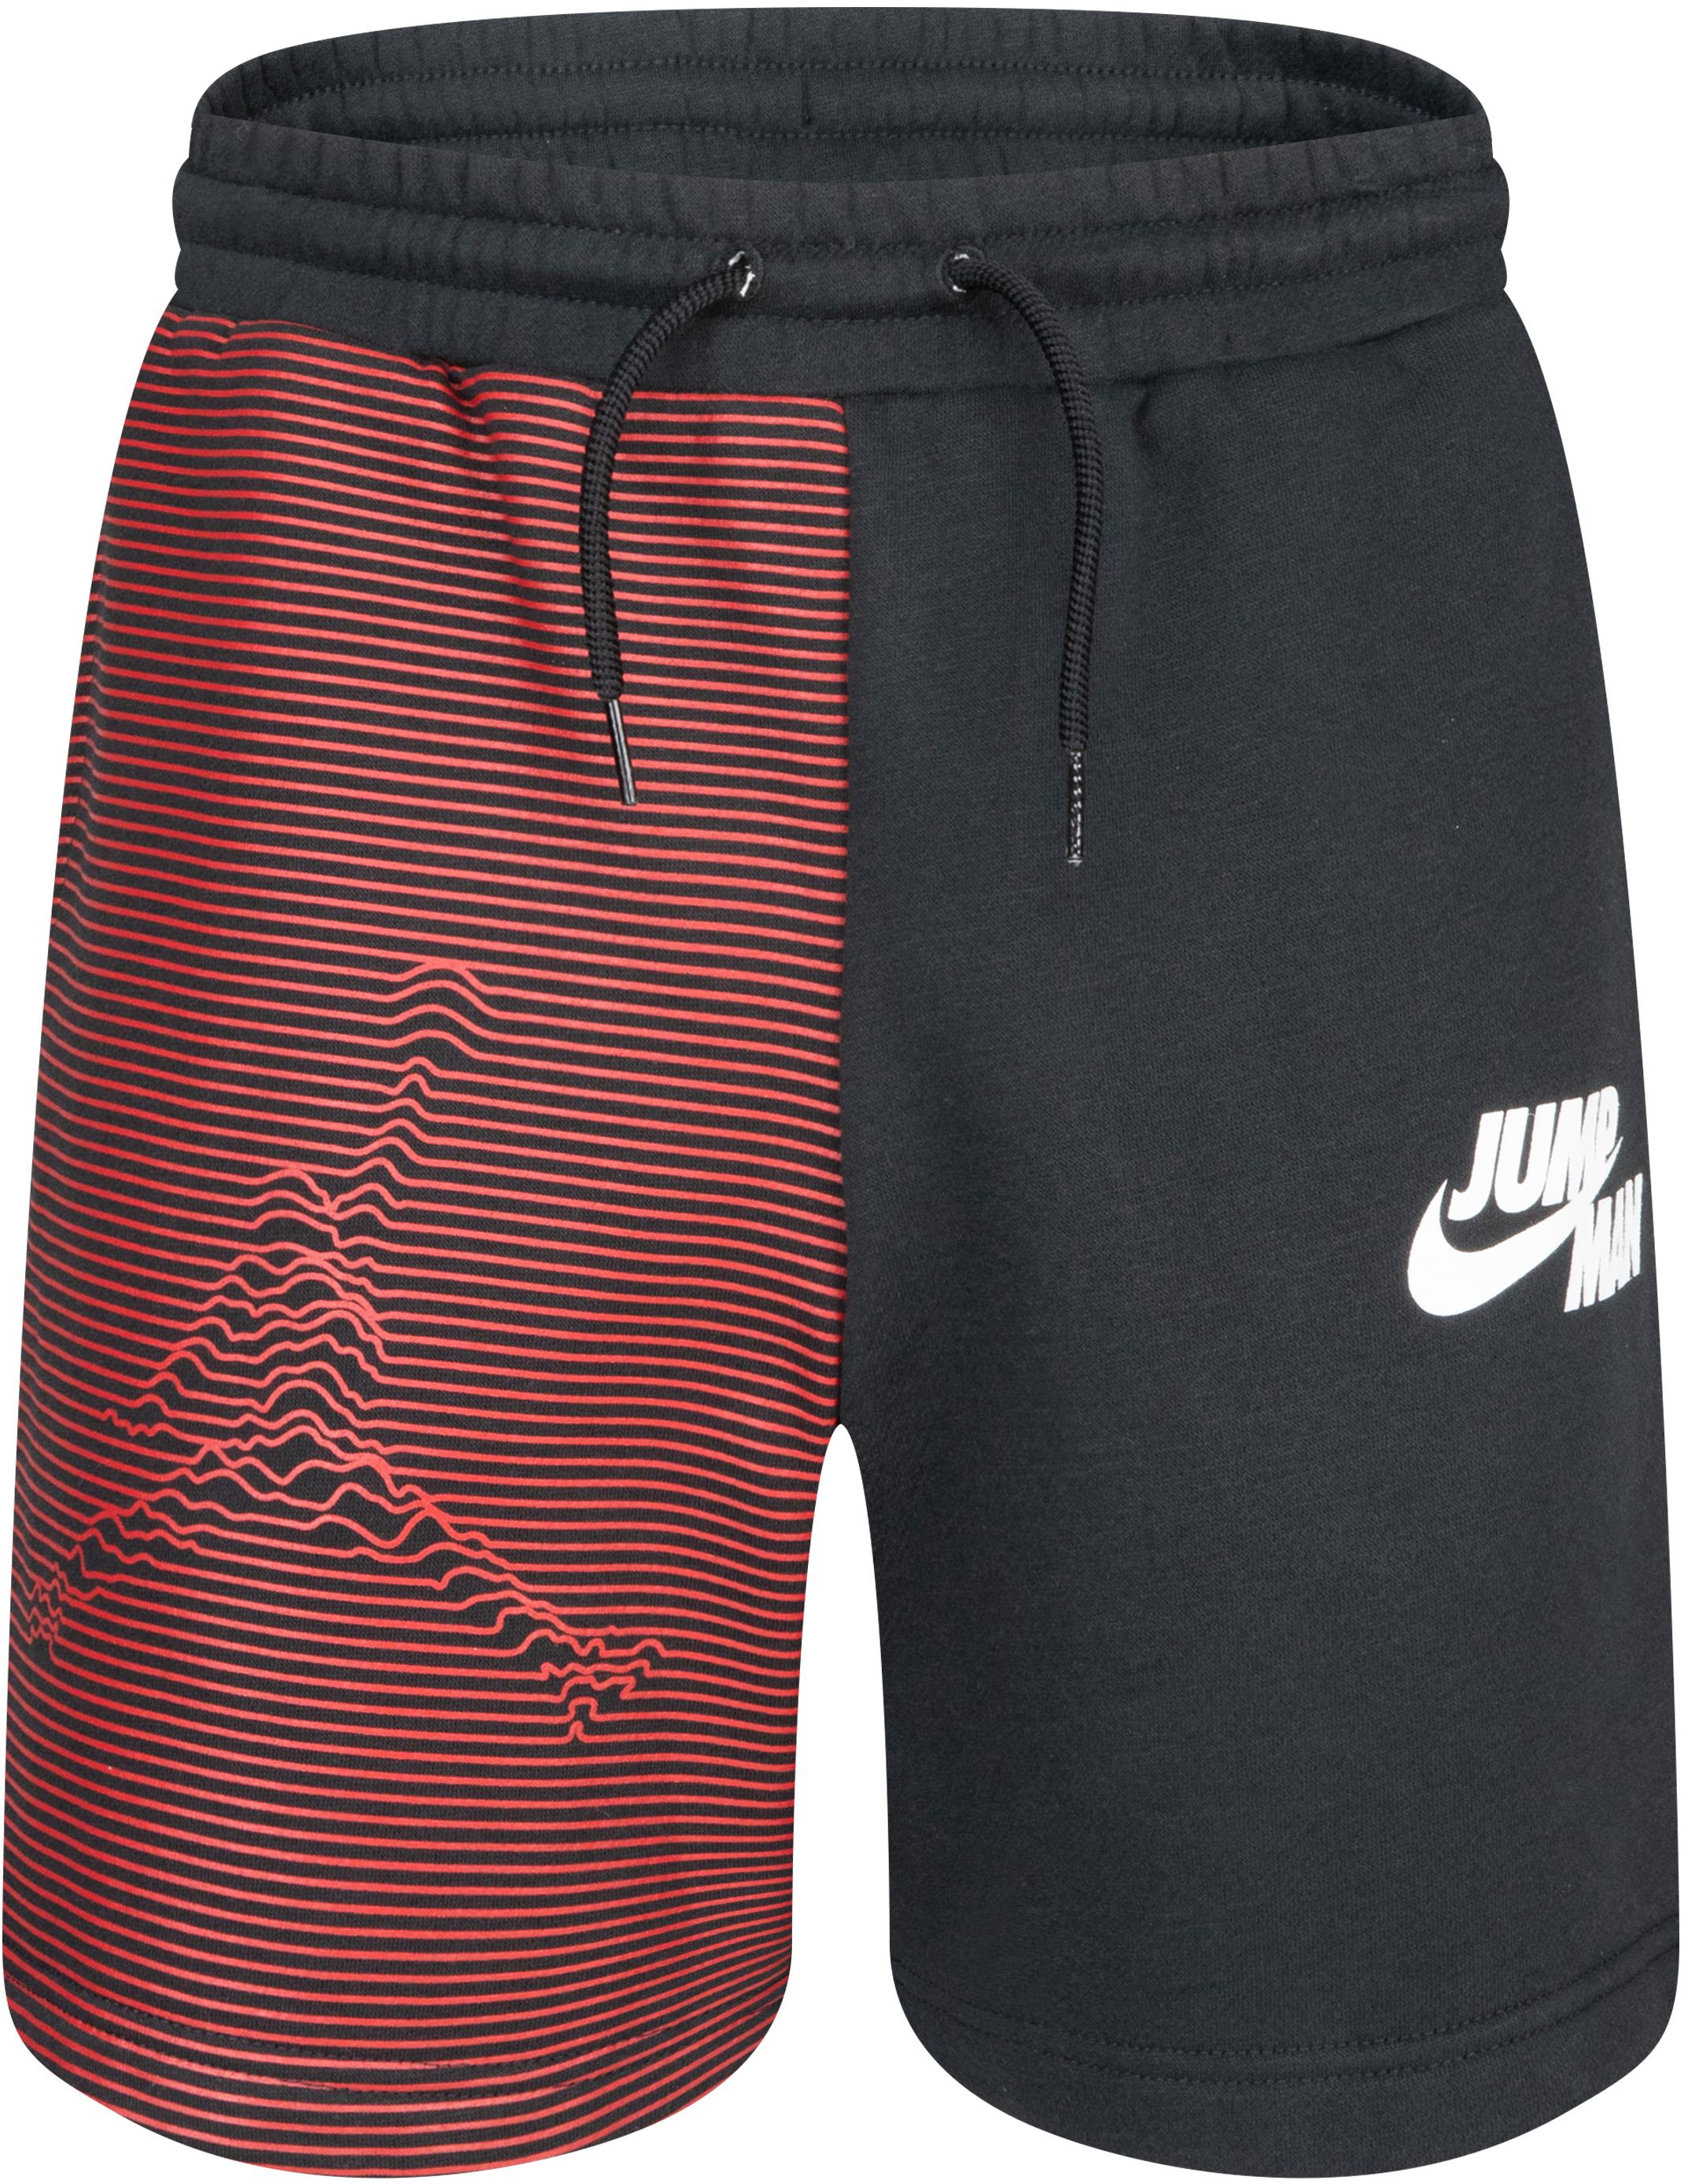 Флисовые шорты Jumpman X Nike (для больших детей) Jordan Kids